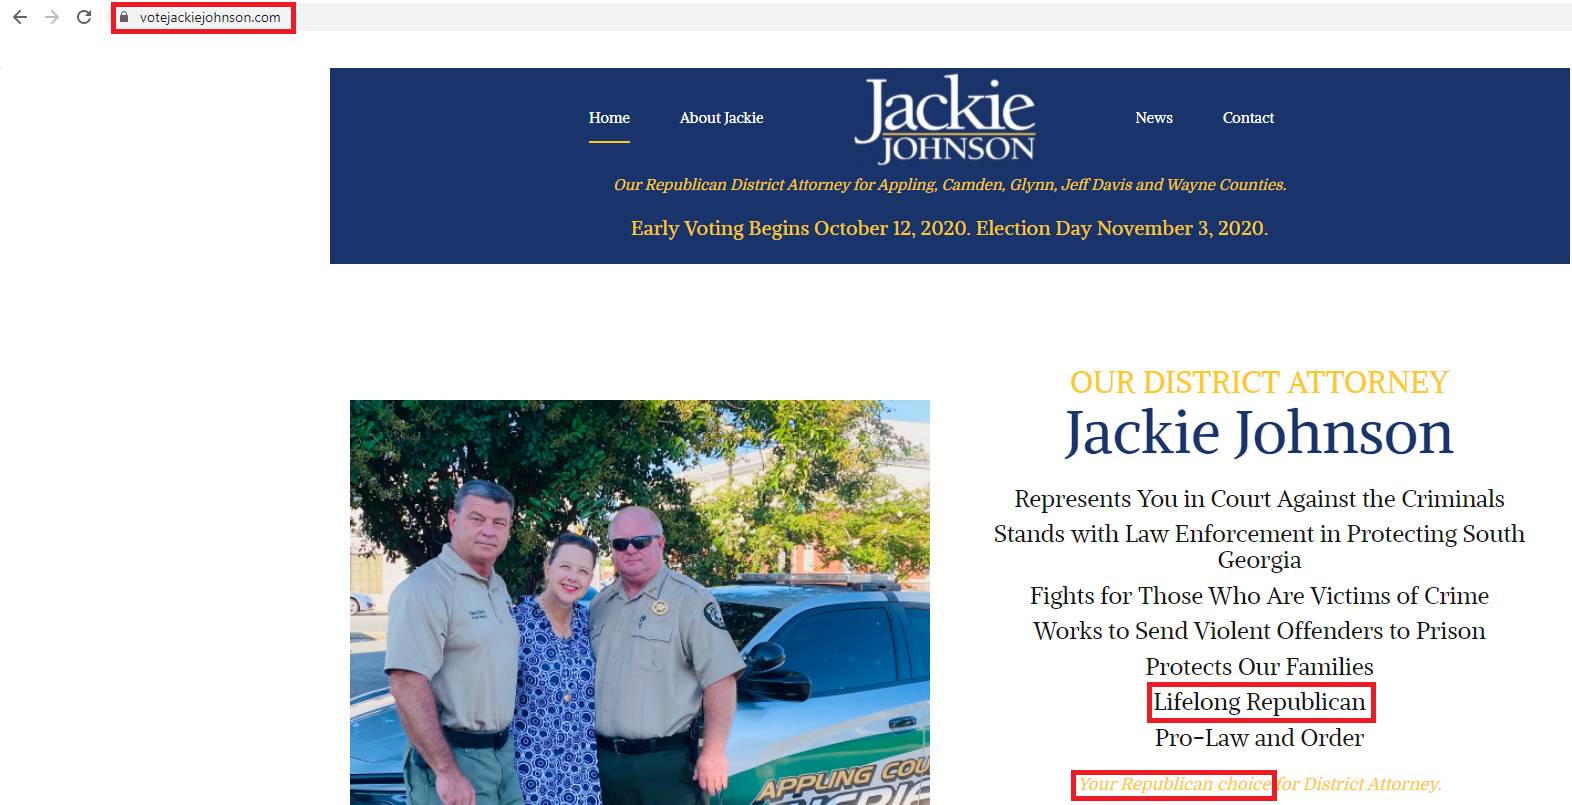 jackie johnson website homepage